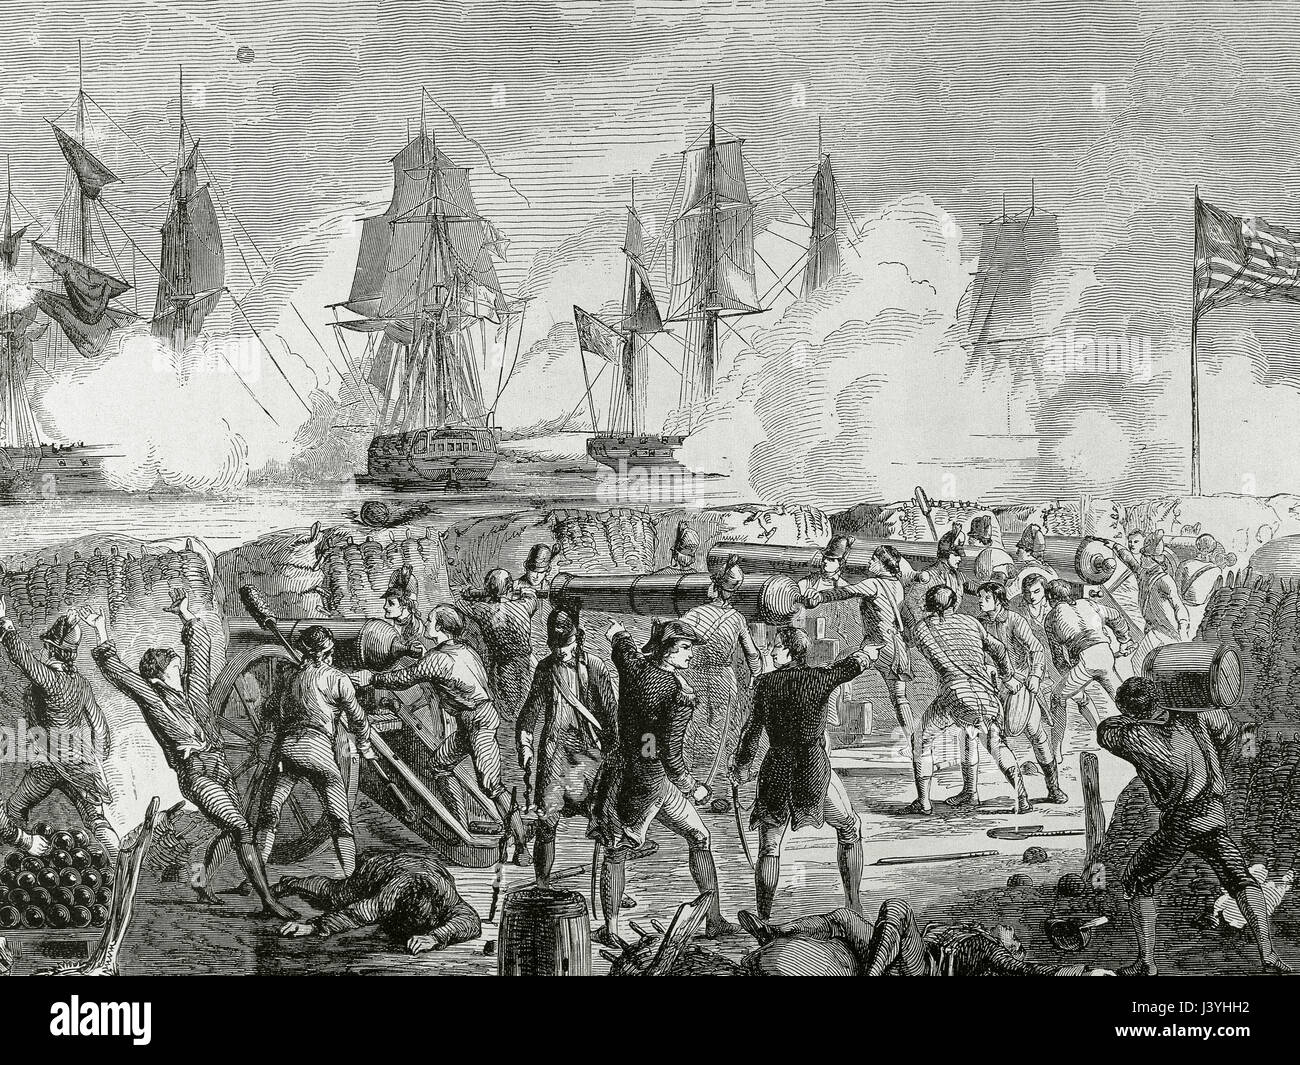 Amerikanischer Unabhängigkeitskrieg (1775-1783). Schlacht von Sullivans Island, 28. Juni, 1776. Amerikanische Soldaten feuern ihre Artillerie gegen die englische Flotte. Gravur. Stockfoto